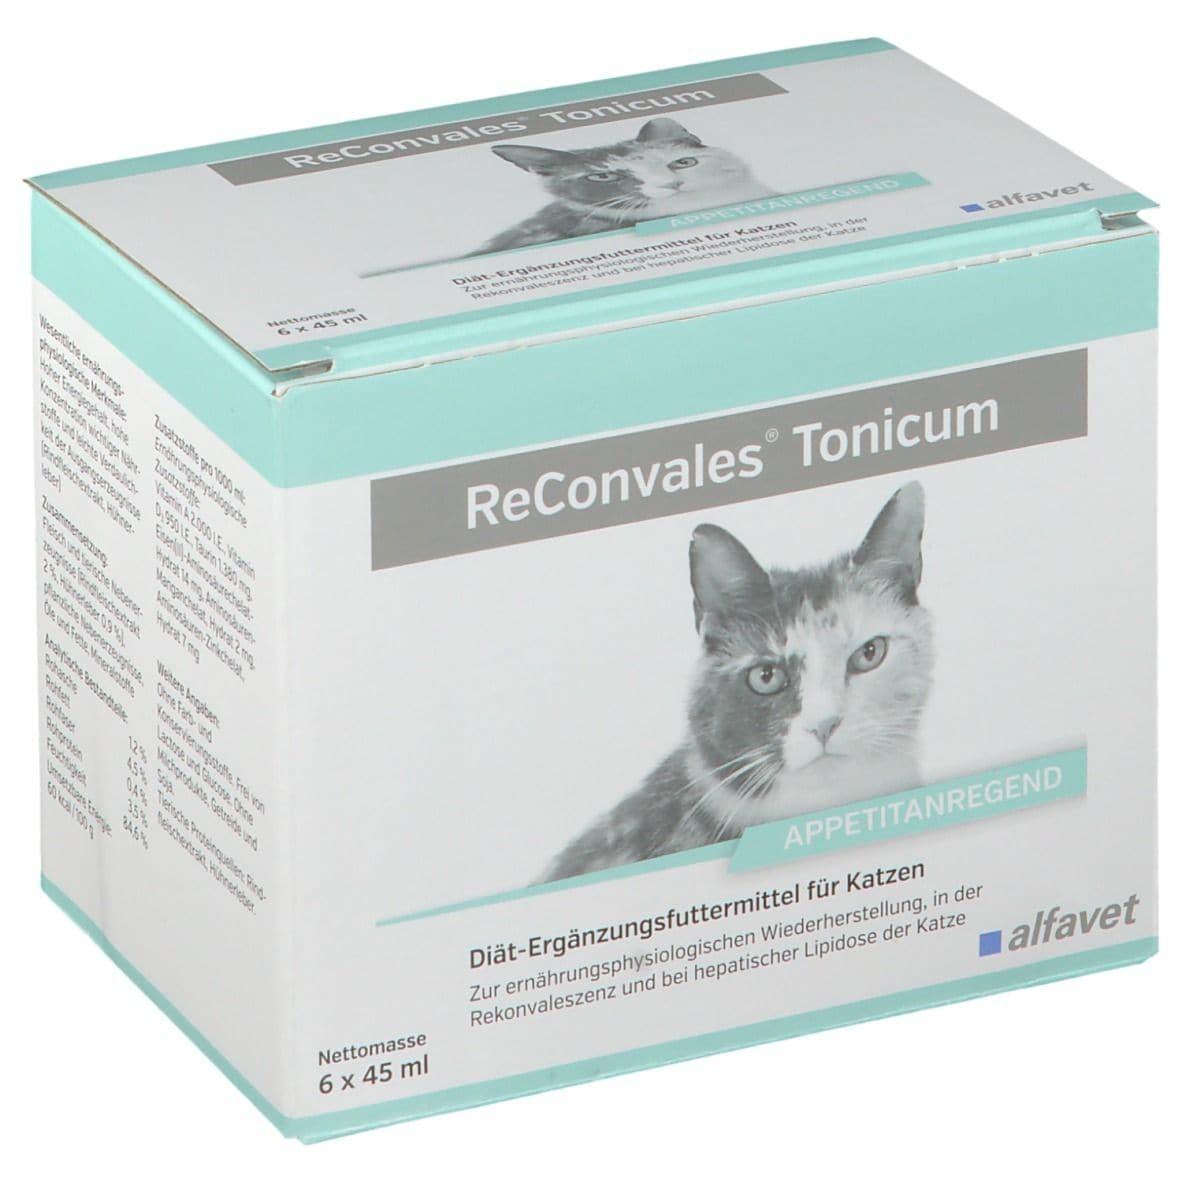 ReConvales Tonicum Katze - Alfavet - Darreichungsform:Flüssigkeit, Ergänzungsfuttermittel:Erholung, Ergänzungsfuttermittel:Leber, Tierart:Katze - Marigin AG Onlineshop für Tierbedarf